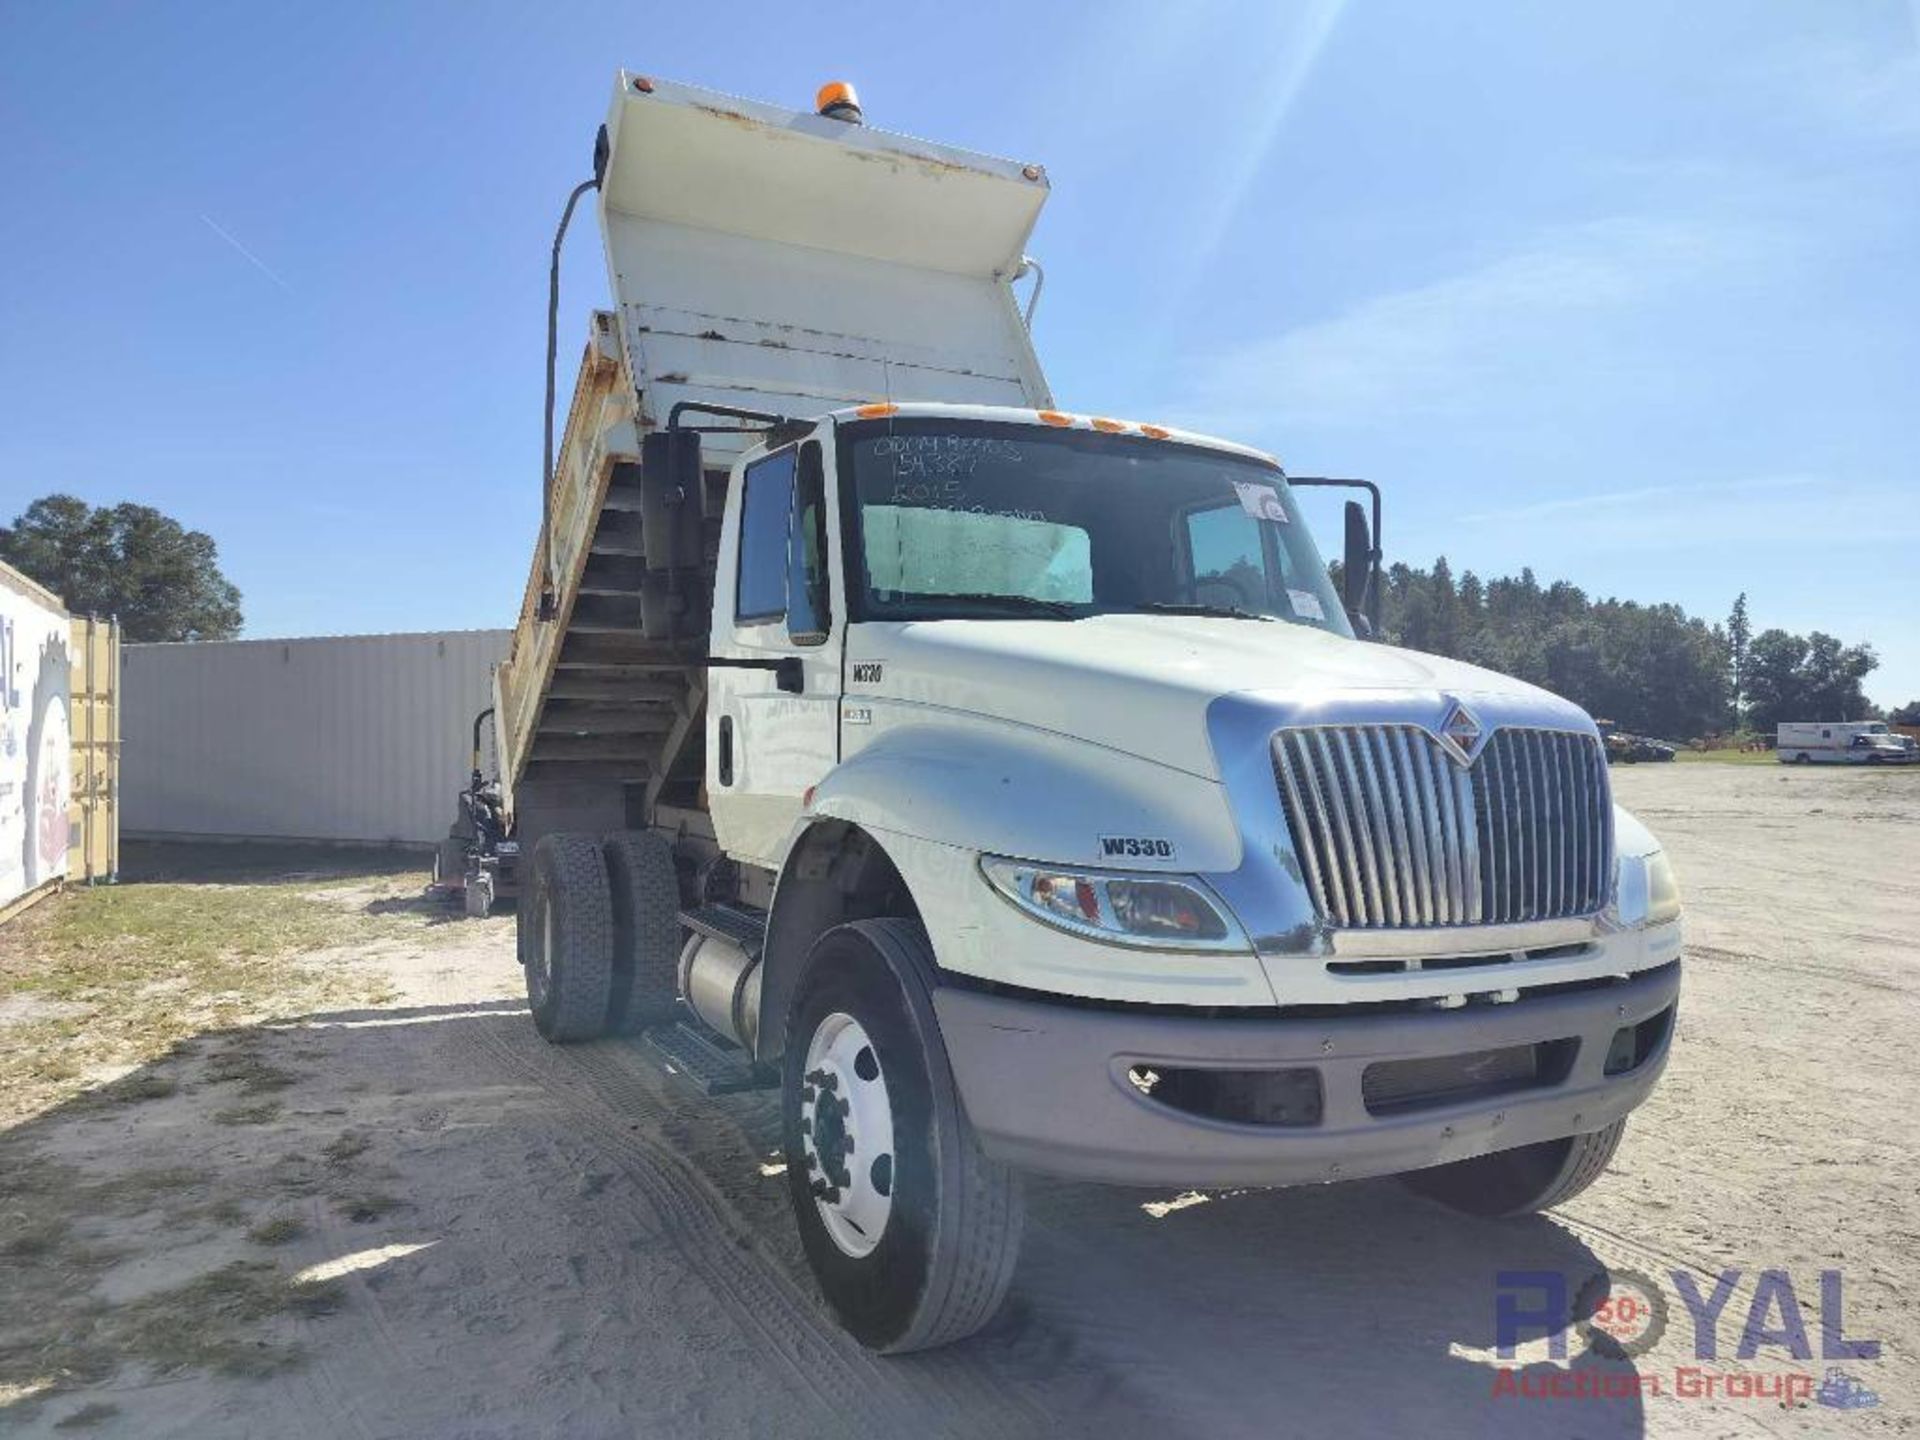 2015 International 4300 Godwin Dump Truck - Image 2 of 26